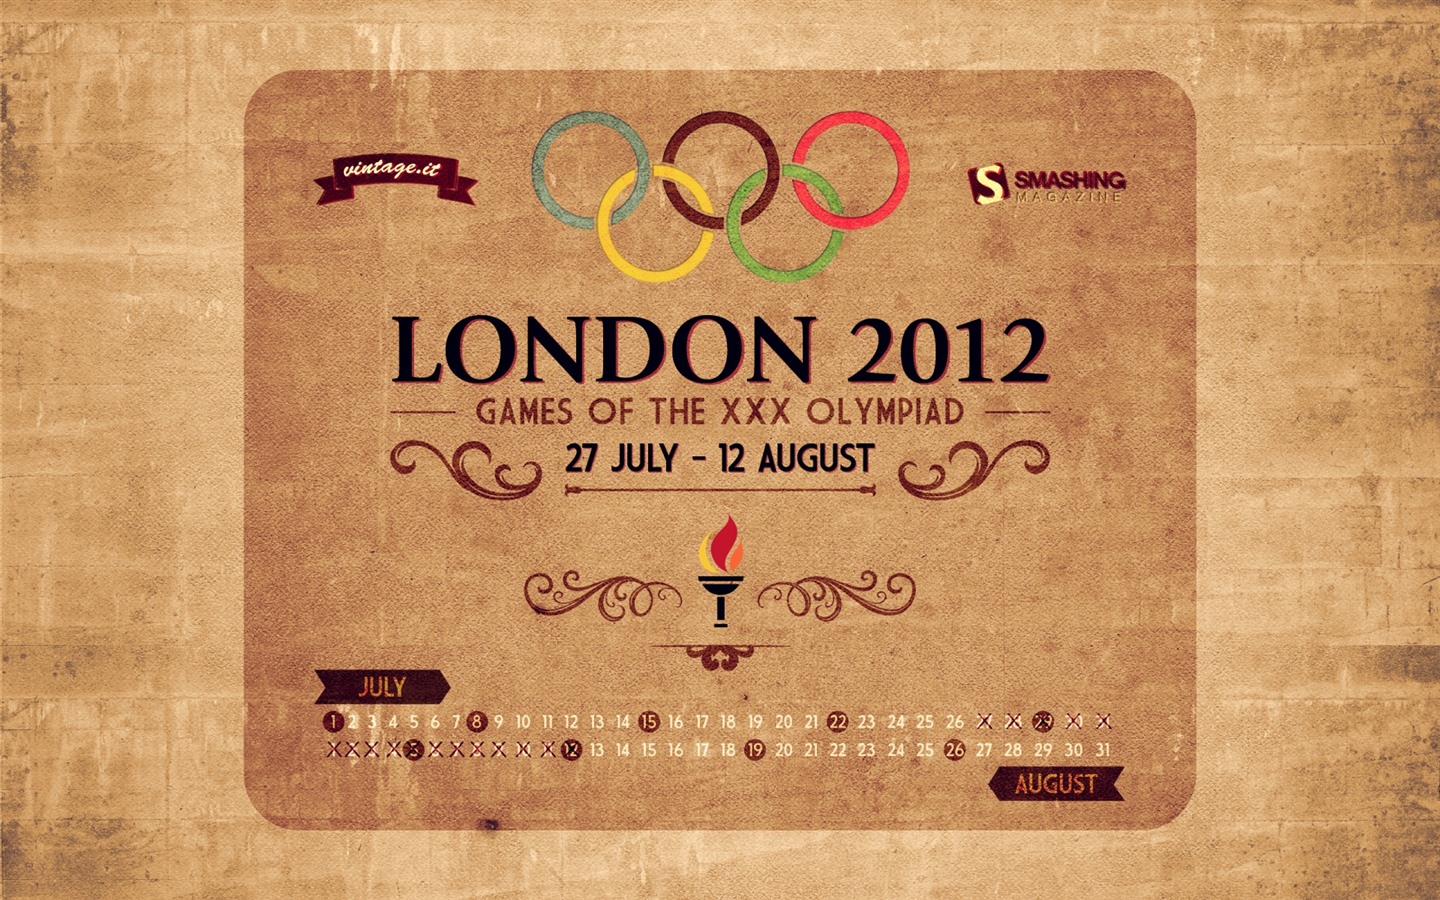 Londres 2012 Olimpiadas fondos temáticos (1) #24 - 1440x900